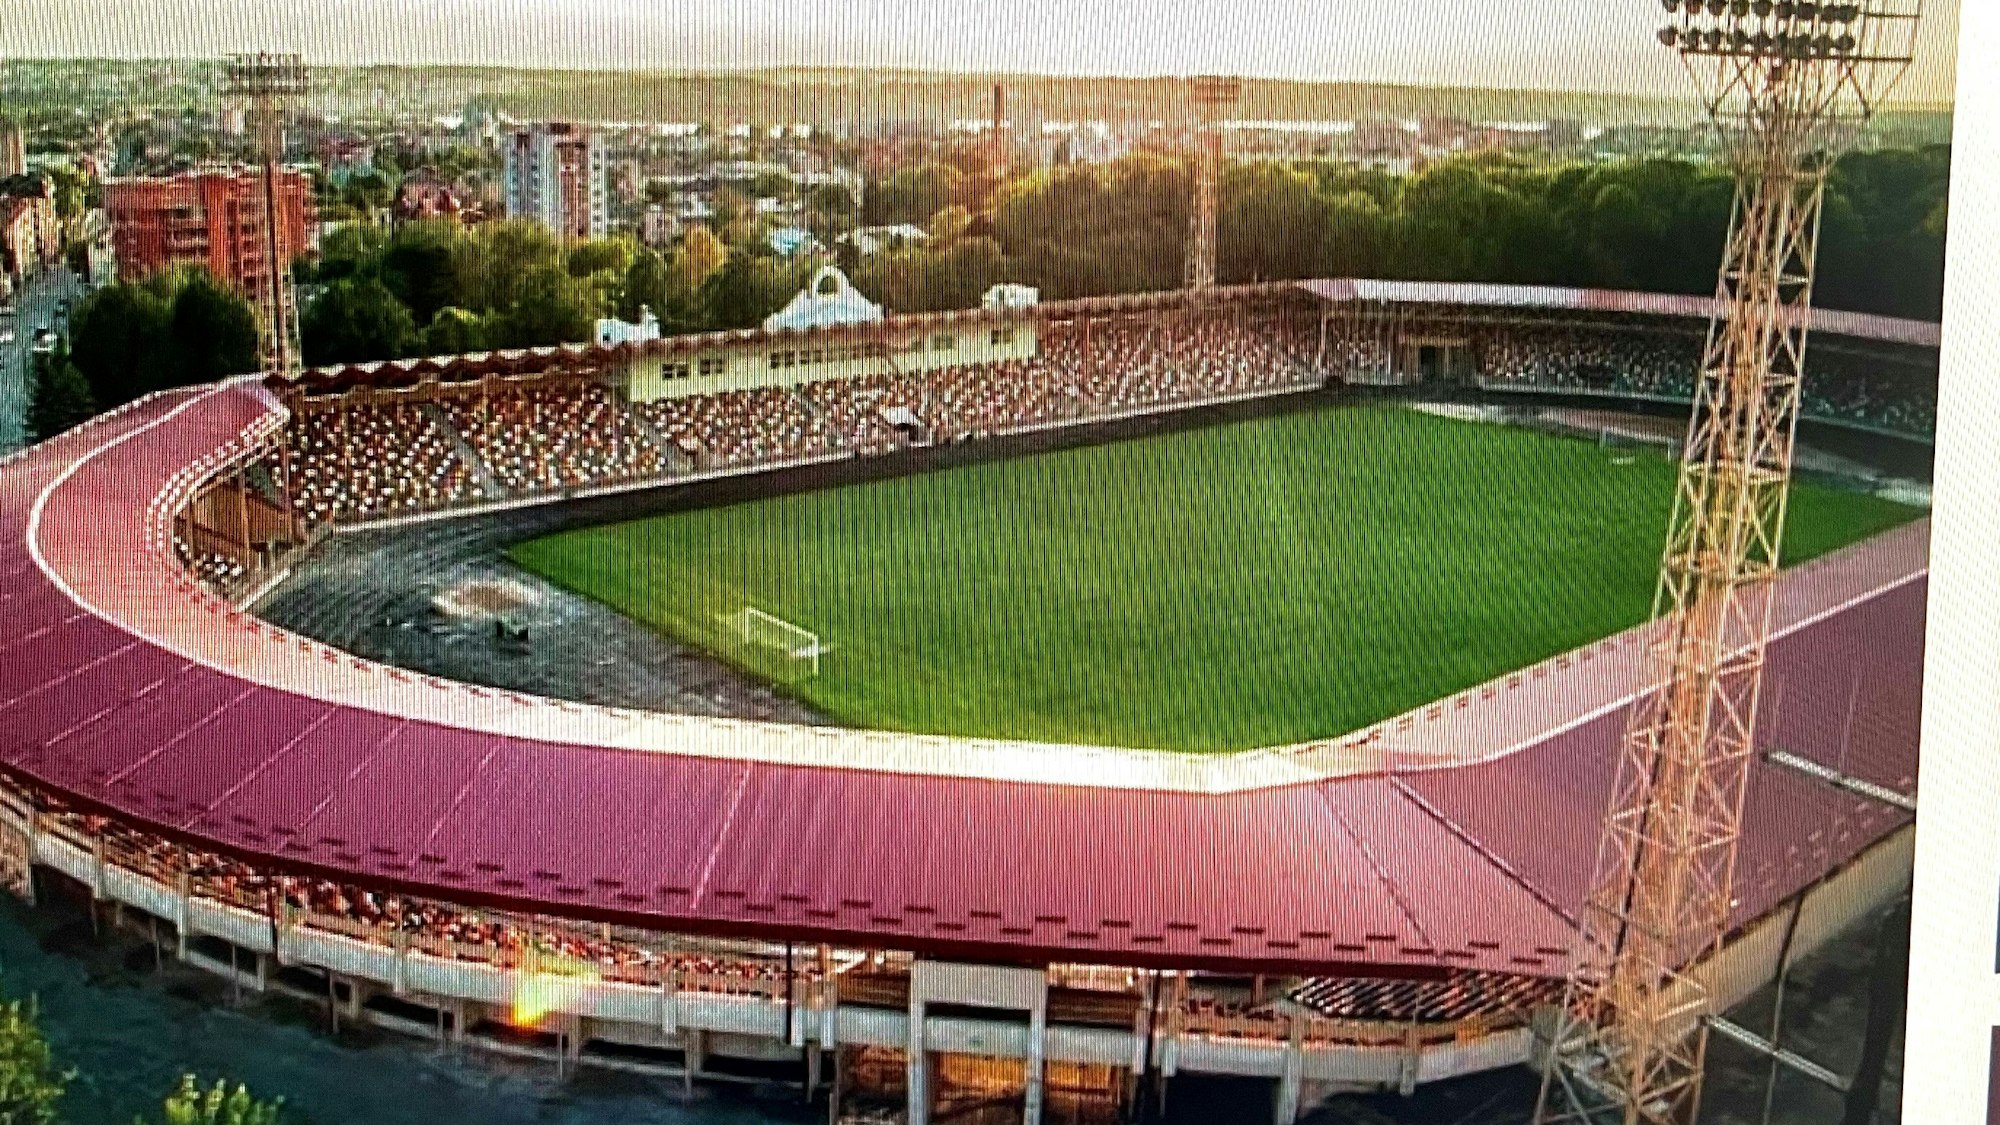 Ein Fußballstadion aus der Luft gesehen.